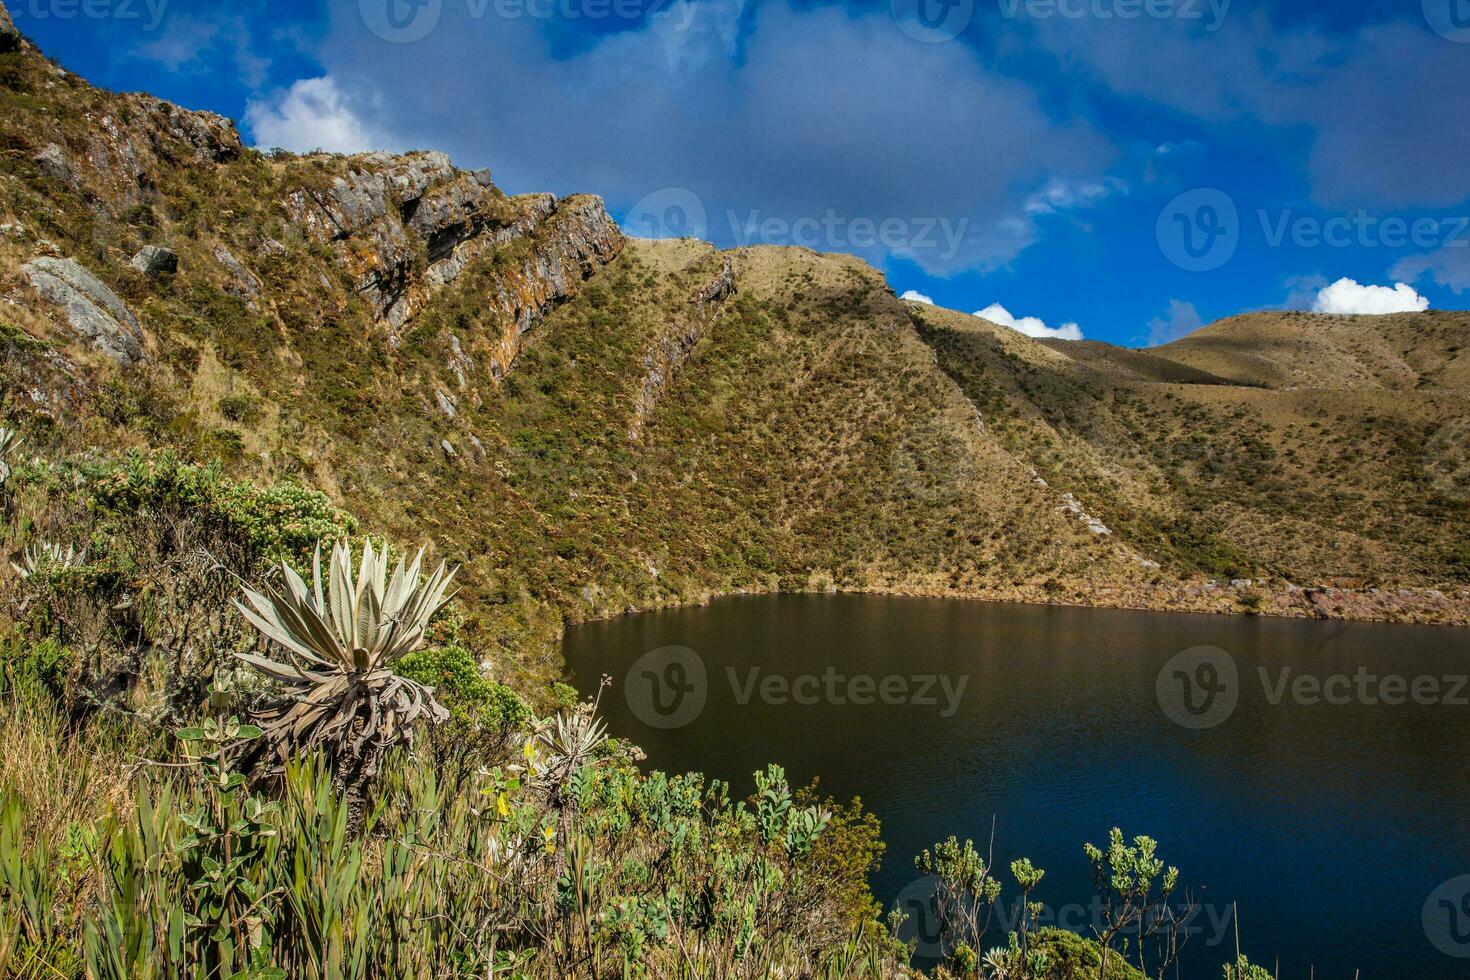 skön landskap av colombianska andean bergen som visar paramo typ vegetation i de avdelning av cundinamarca foto